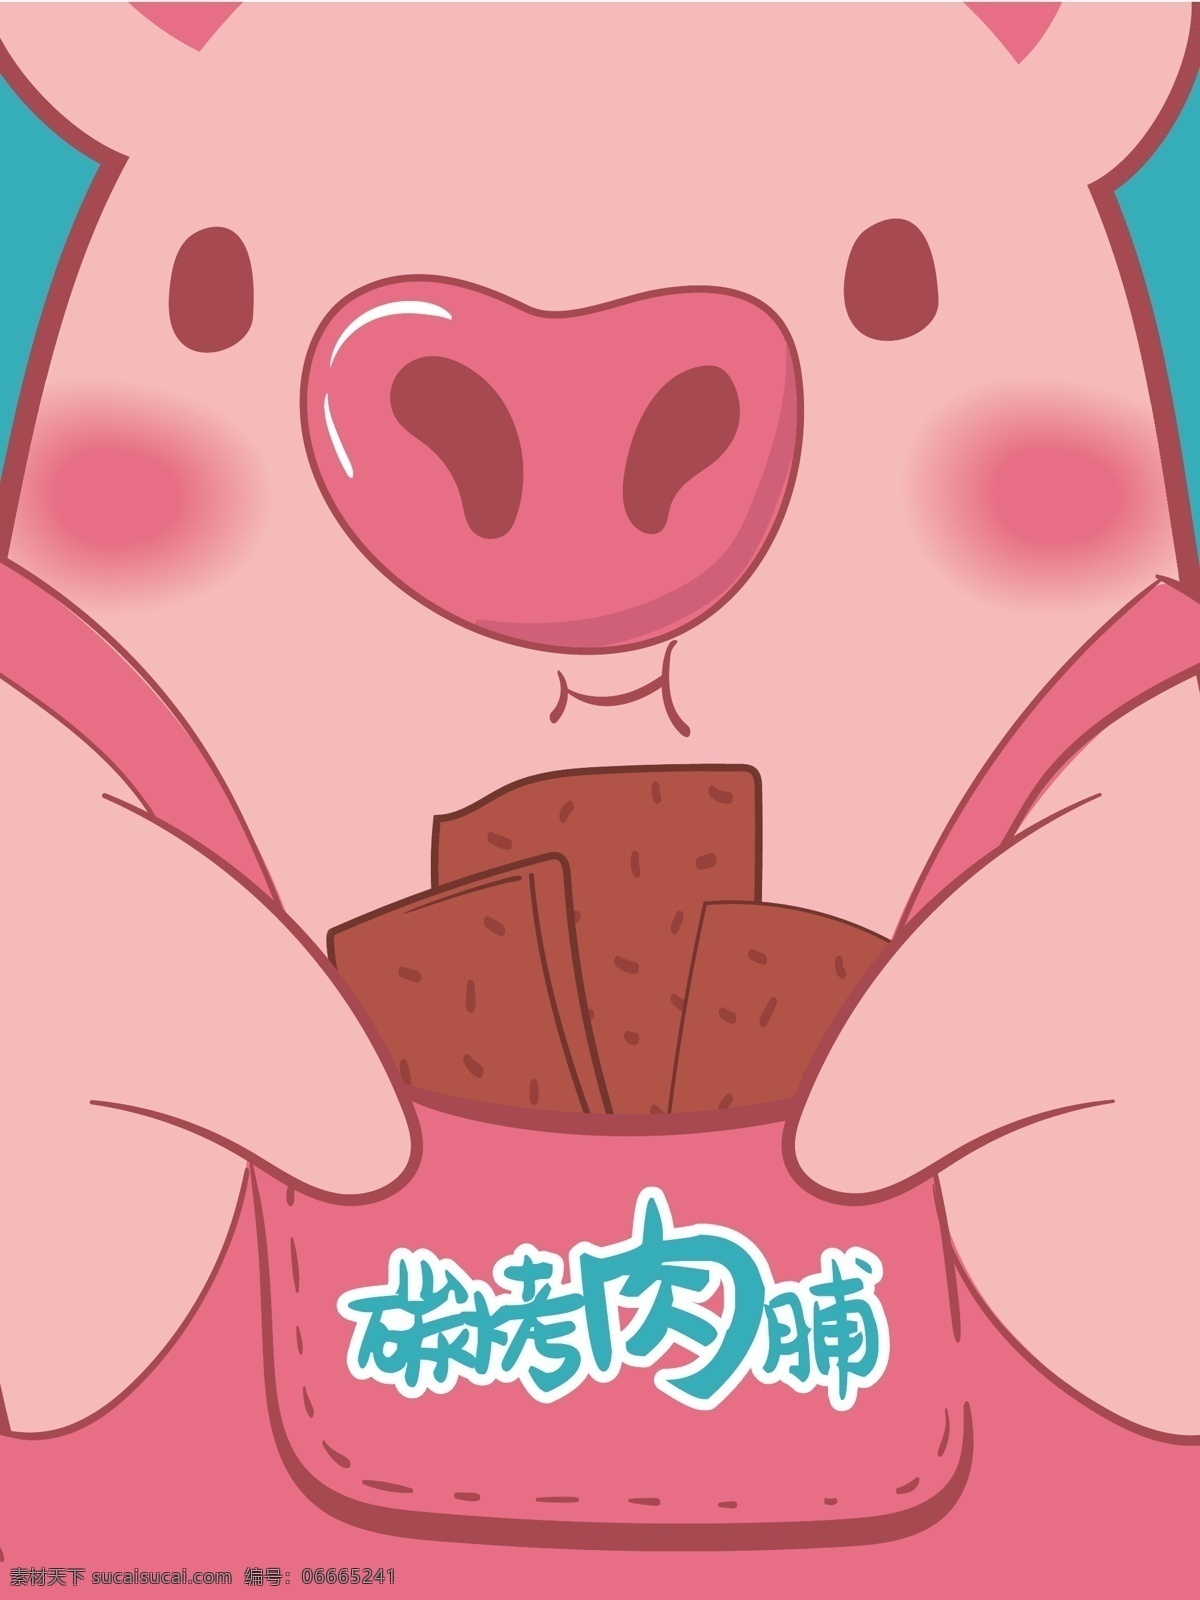 碳 烤 猪 肉脯 袋装 包装 碳烤肉脯 猪肉脯 熟食包装 卡通包装 插画包装 矢量 猪肉